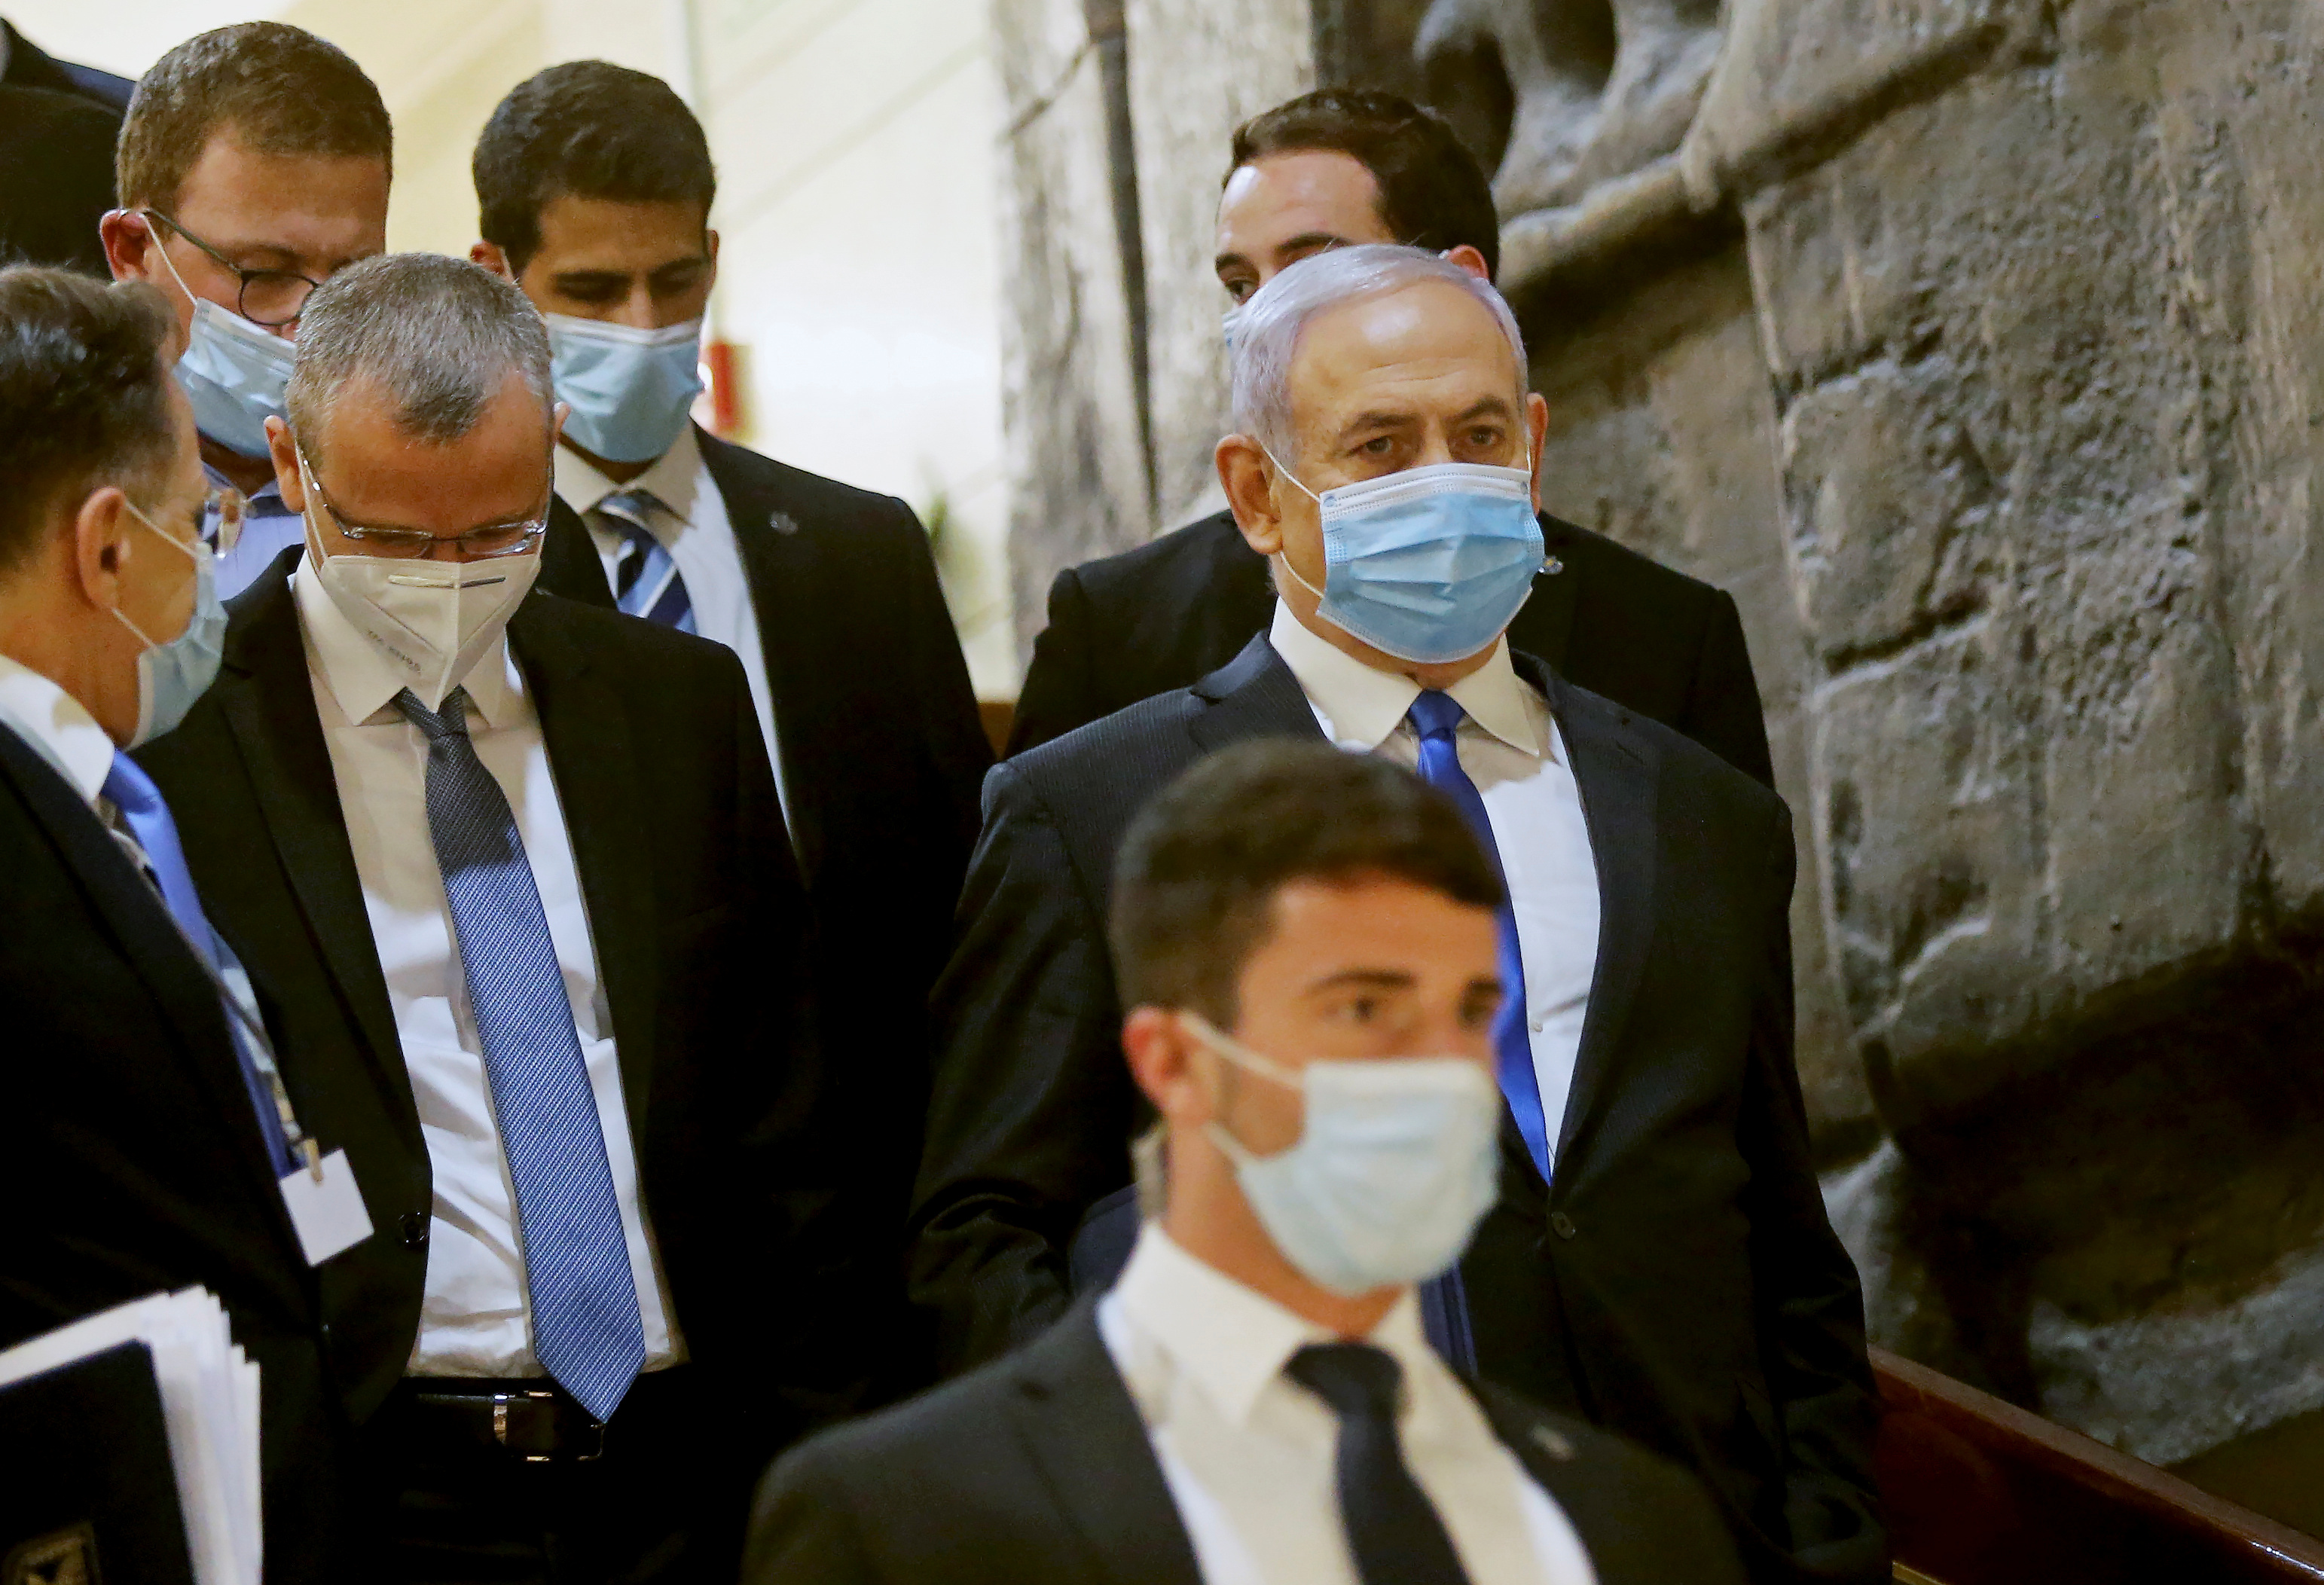 El primer ministro israelí Benjamin Netanyahu lleva una máscara protectora en su camino hacia la ceremonia de juramento de un nuevo gobierno de unidad en el Knesset (parlamento de Israel) en Jerusalén el 17 de mayo de 2020. REUTERS